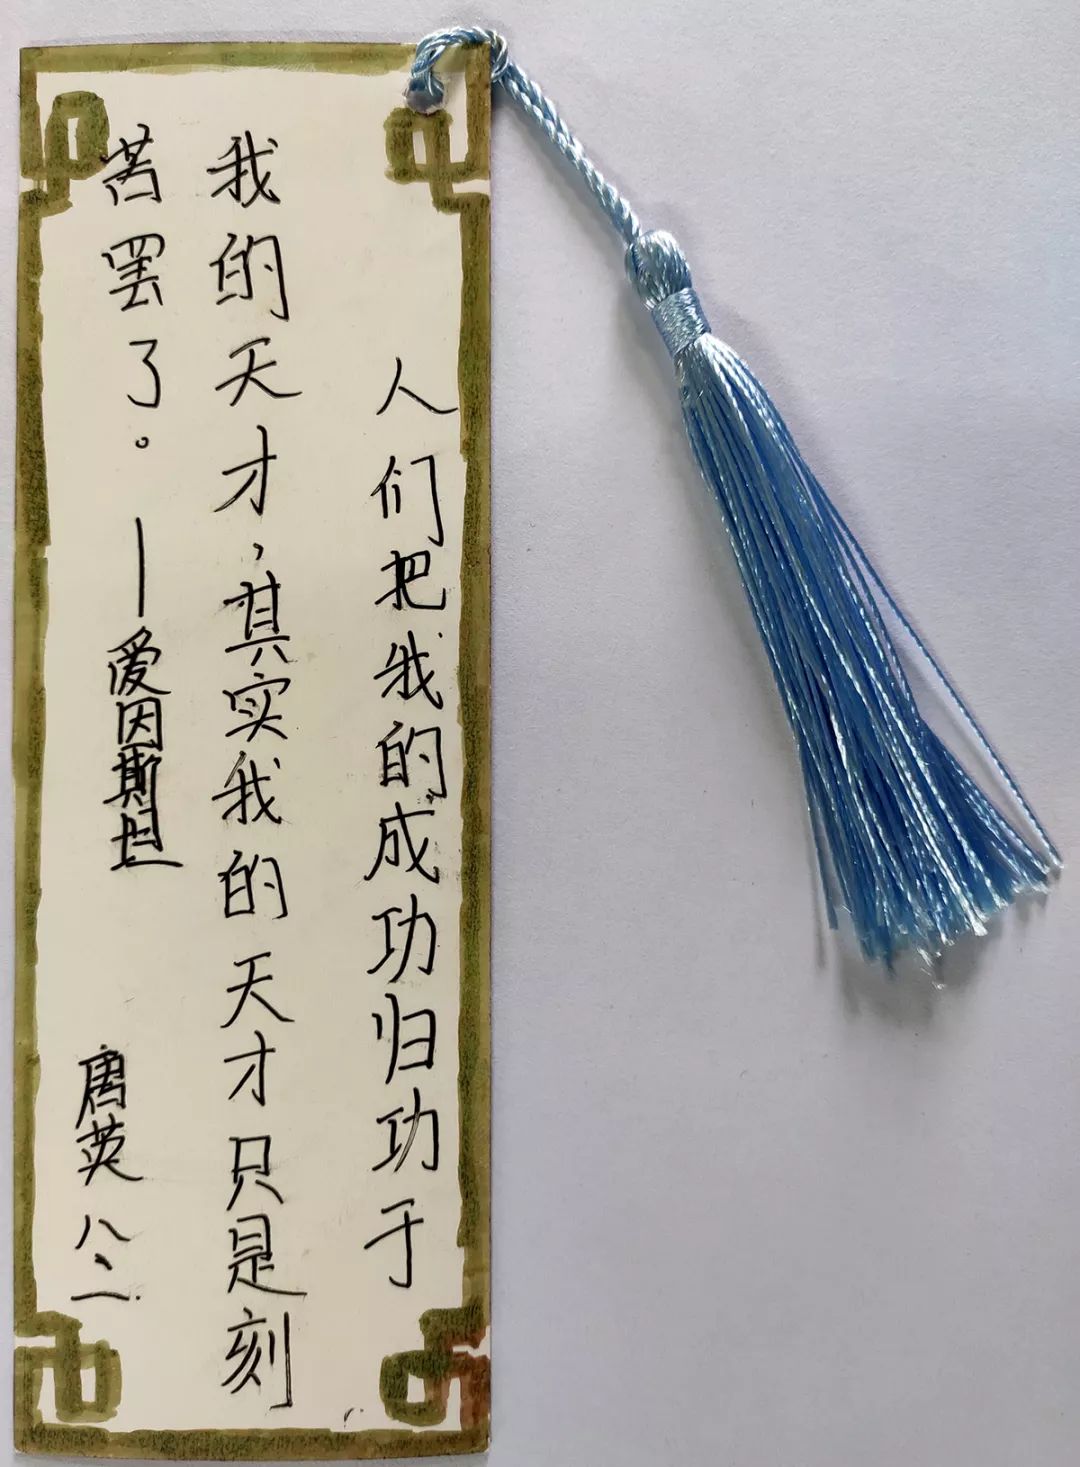 中华传统文化传承——写经典